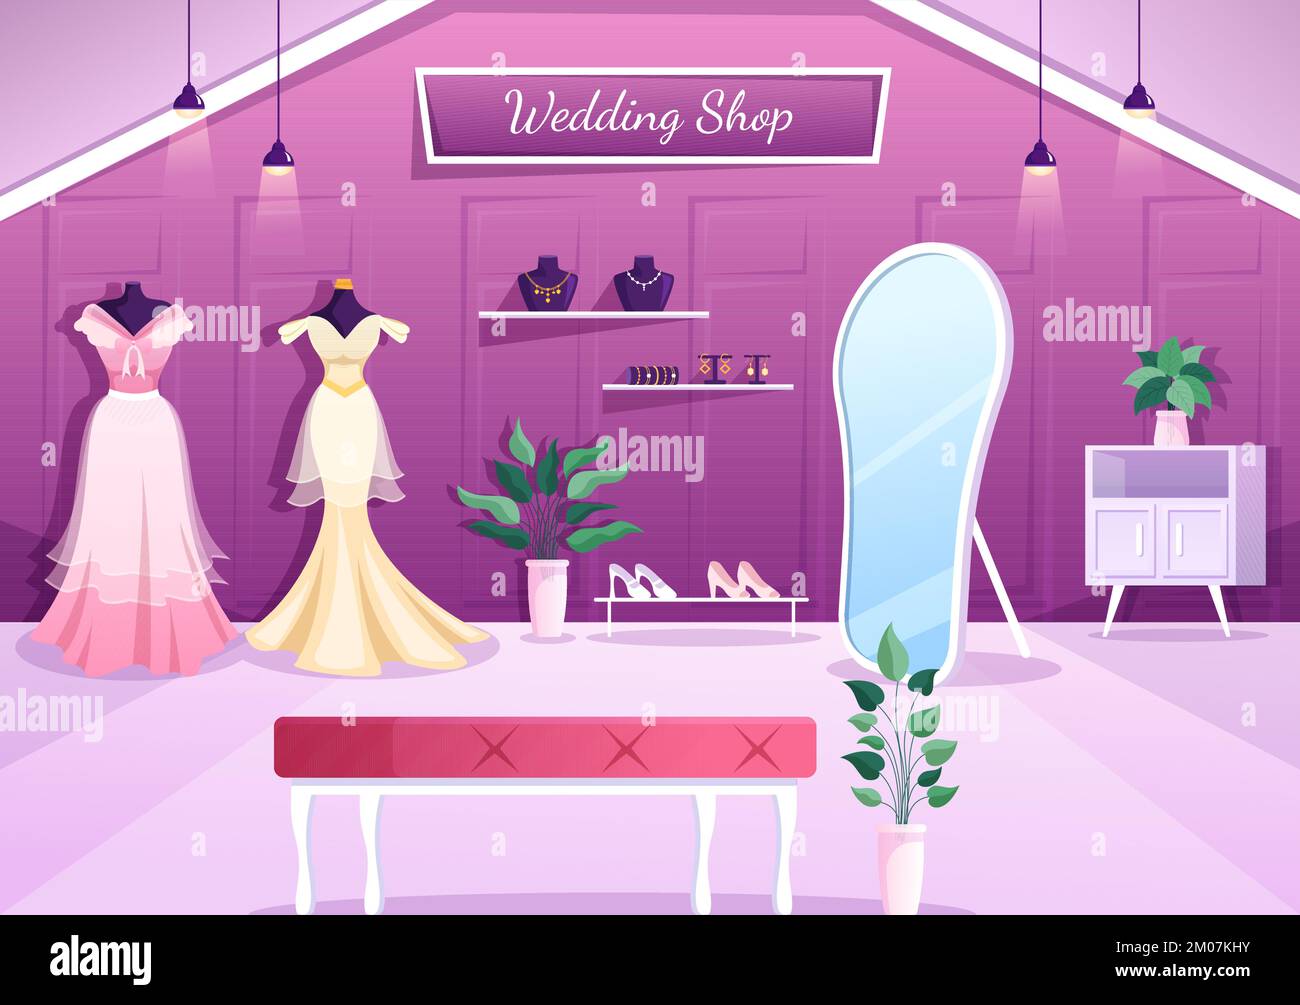 Boutique de mariage avec bijoux, belles robes de mariée et accessoires adaptés pour affiche en dessin main de dessin de dessin animé à la main Illustration de Vecteur